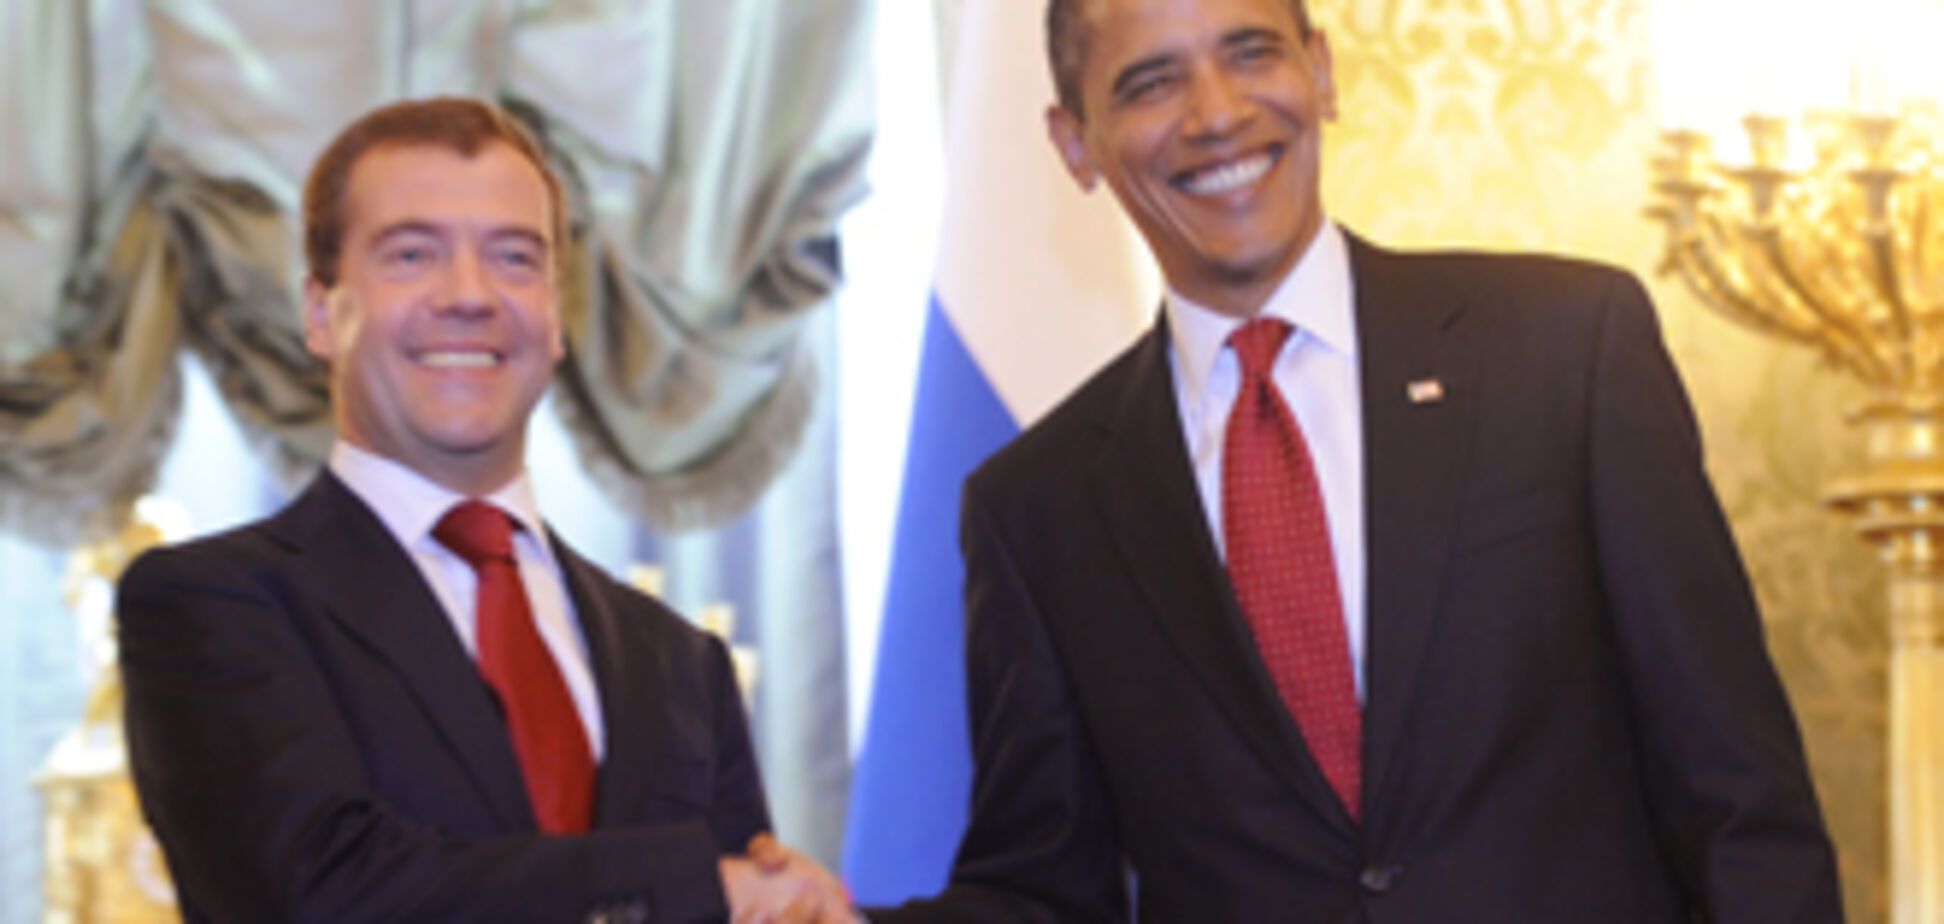 Обама находит Медведева очень искренним и правдивым